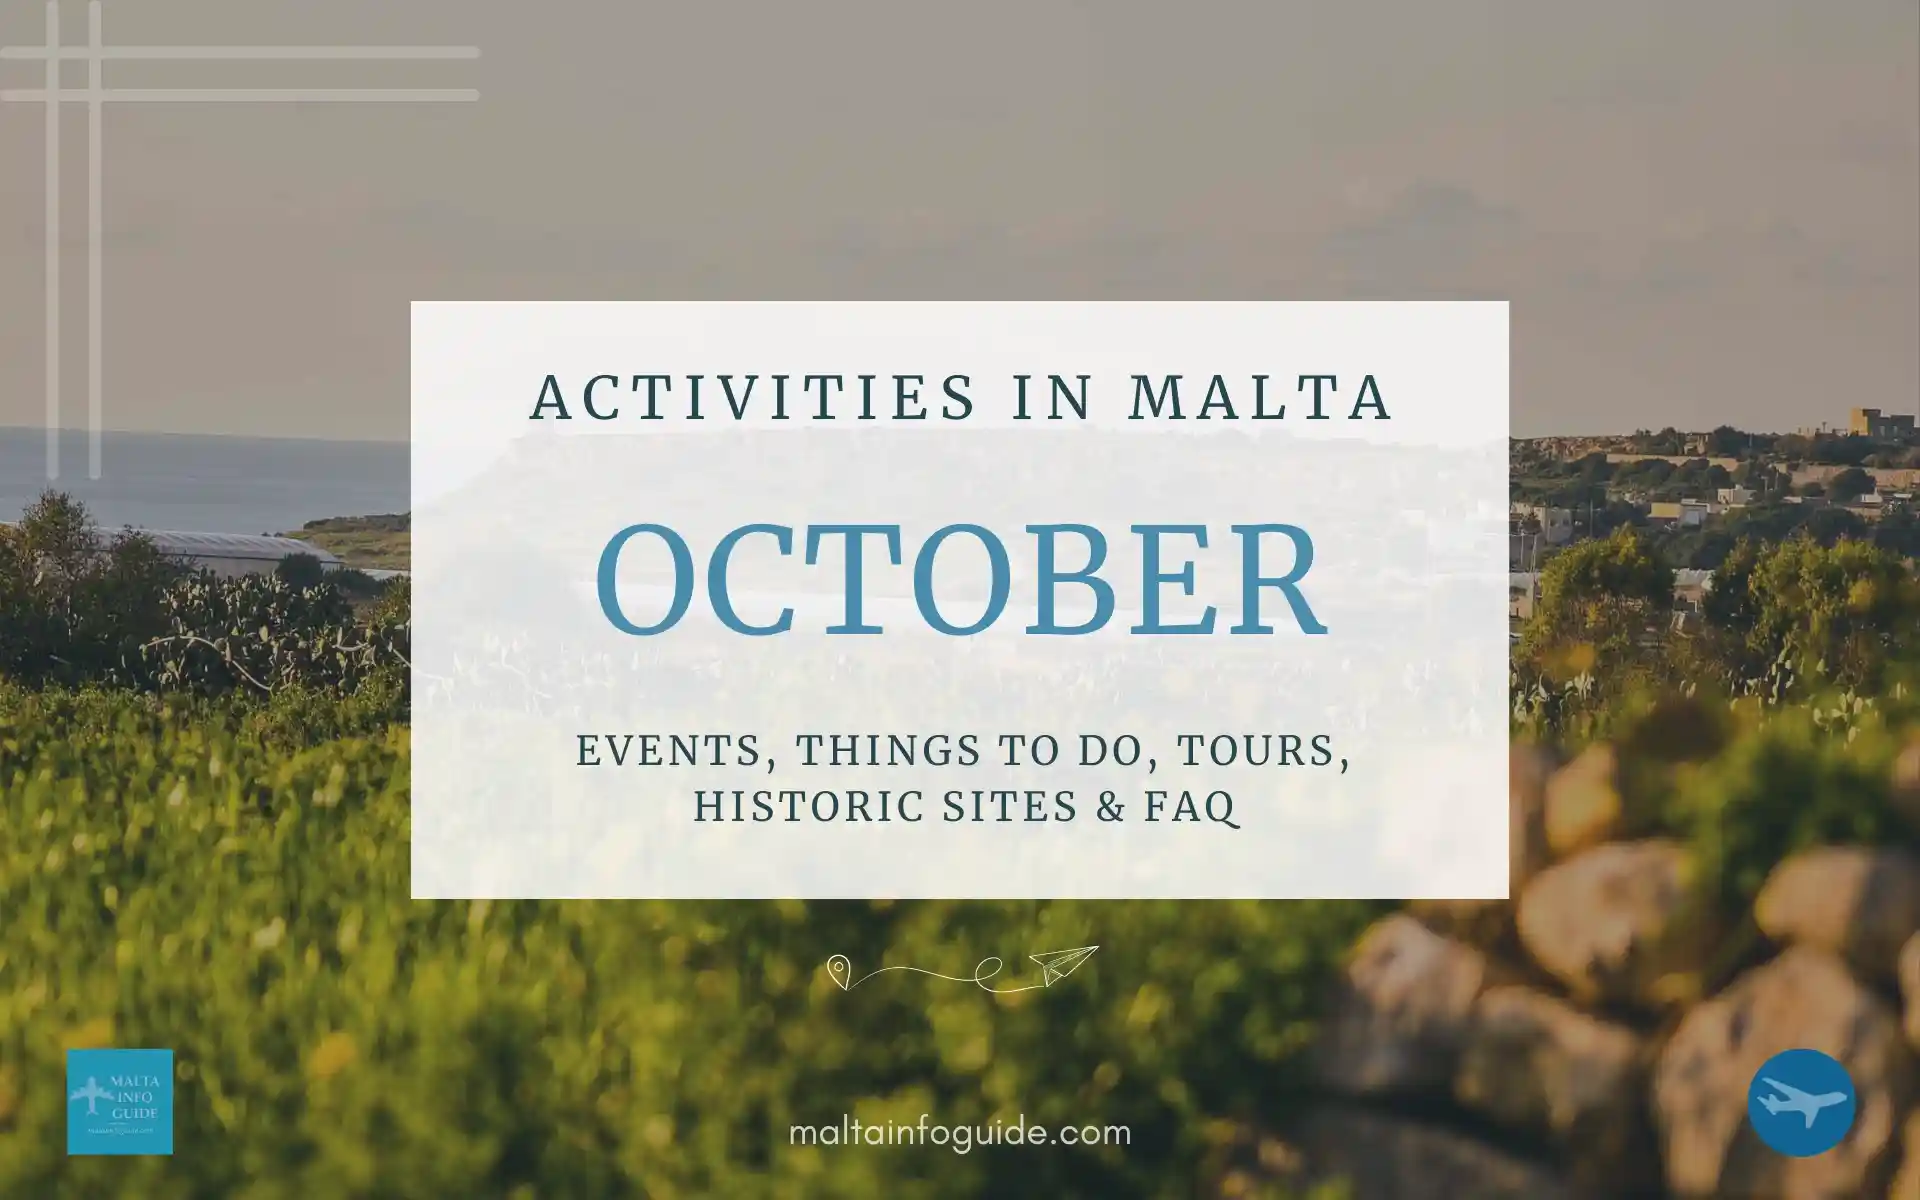 Activities in Malta October.